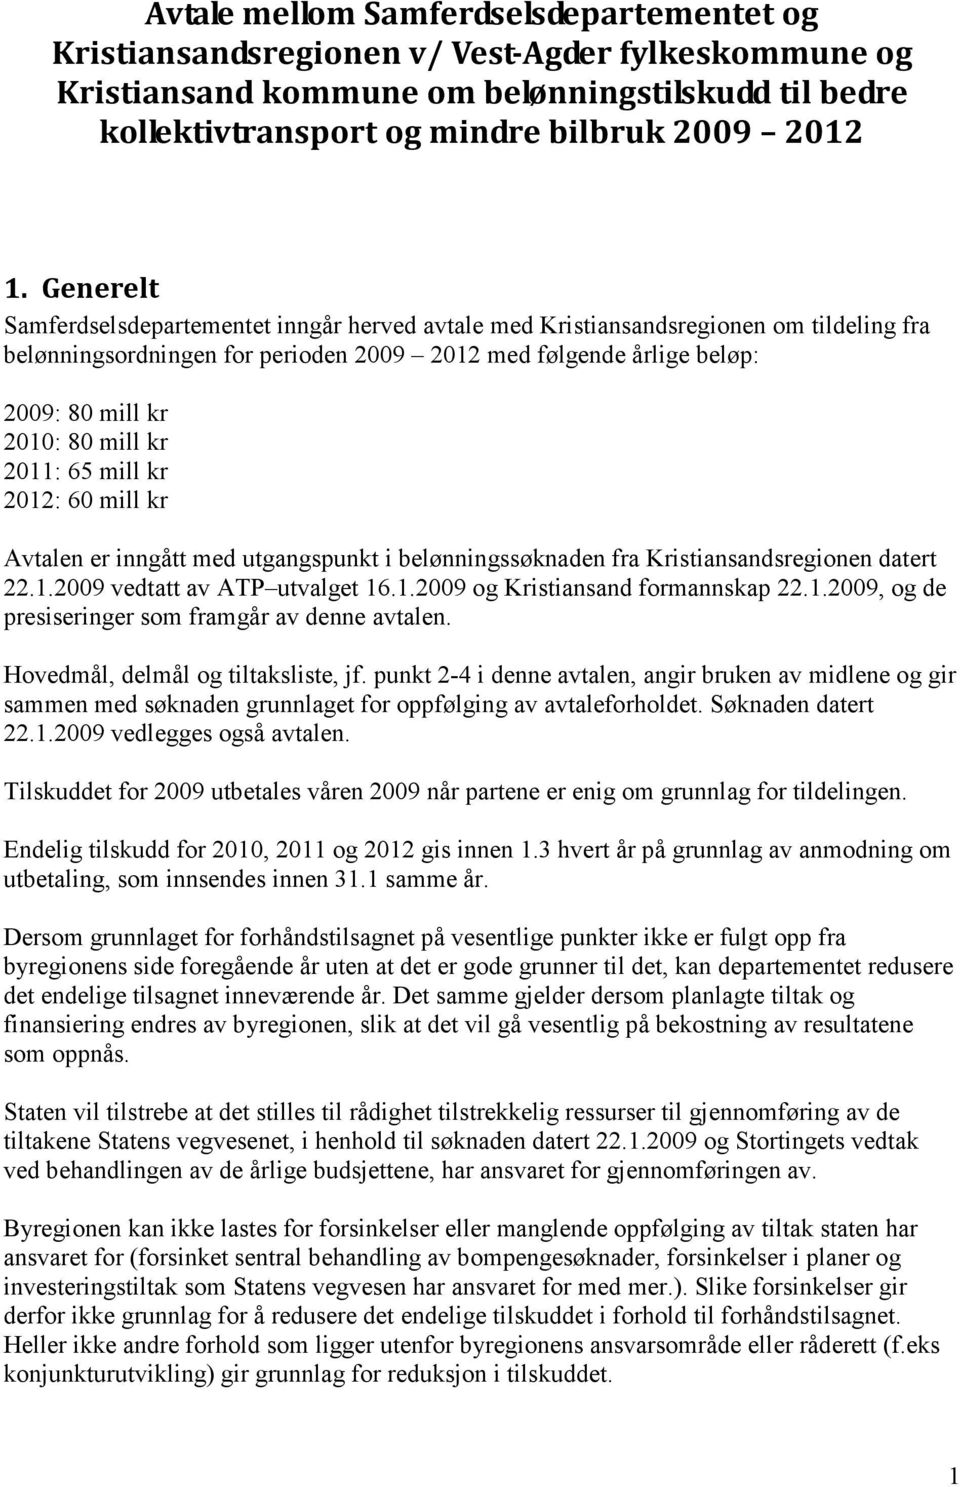 65 kr 2012: 60 kr Avtalen er inngått med utgangspunkt i belønningssøknaden fra Kristiansandsregionen datert 22.1.2009 vedtatt av ATP utvalget 16.1.2009 og Kristiansand formannskap 22.1.2009, og de presiseringer som framgår av denne avtalen.